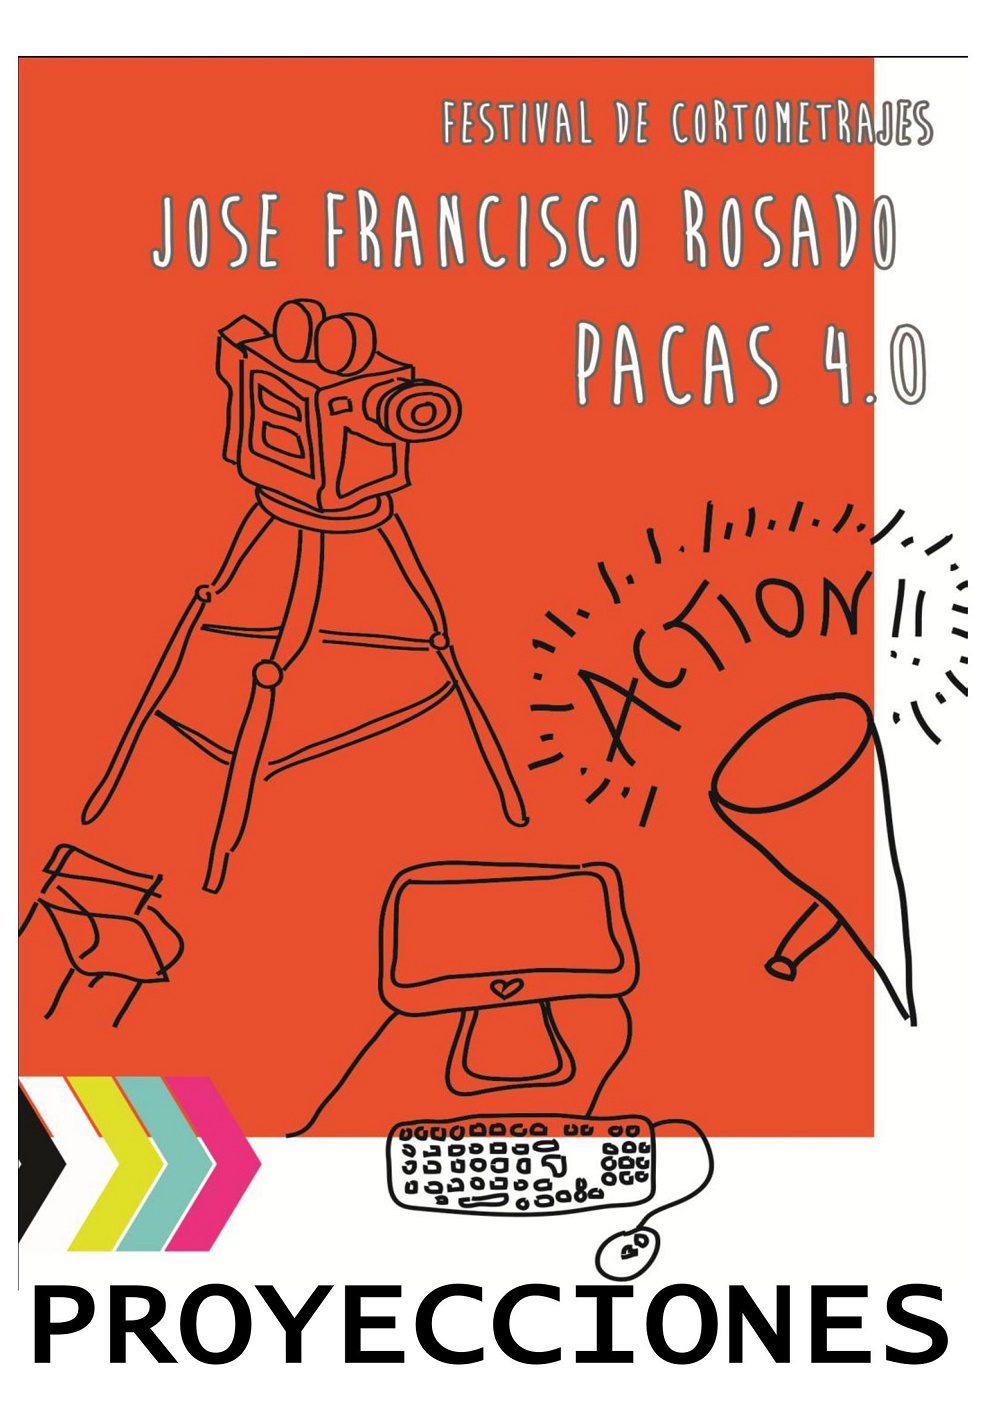 Comienzan las proyecciones de cortos del Festival de Cortometrajes “José Francisco Rosado, PACAS 4.0.” en Pedro Muñoz